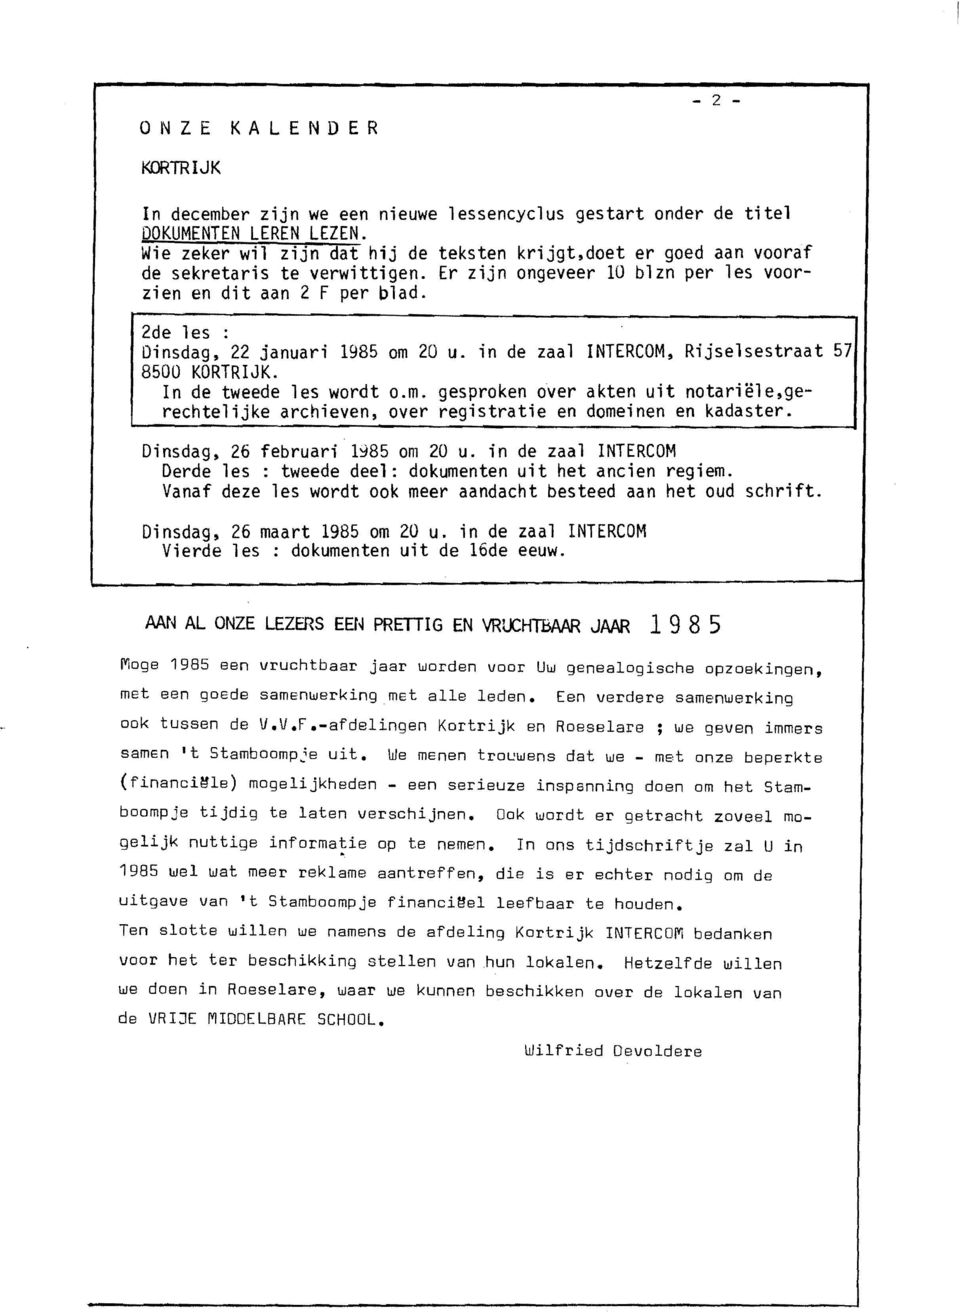 Dinsdag, 22 januari 1985 om 20 u. in de zaal INTERCOM, Rijselsestraat 57 8500 KORTRIJK. In de tweede les wordt o.m. gesproken over akten uit notariële,gerechtelijke archieven, over registratie en domeinen en kadaster.